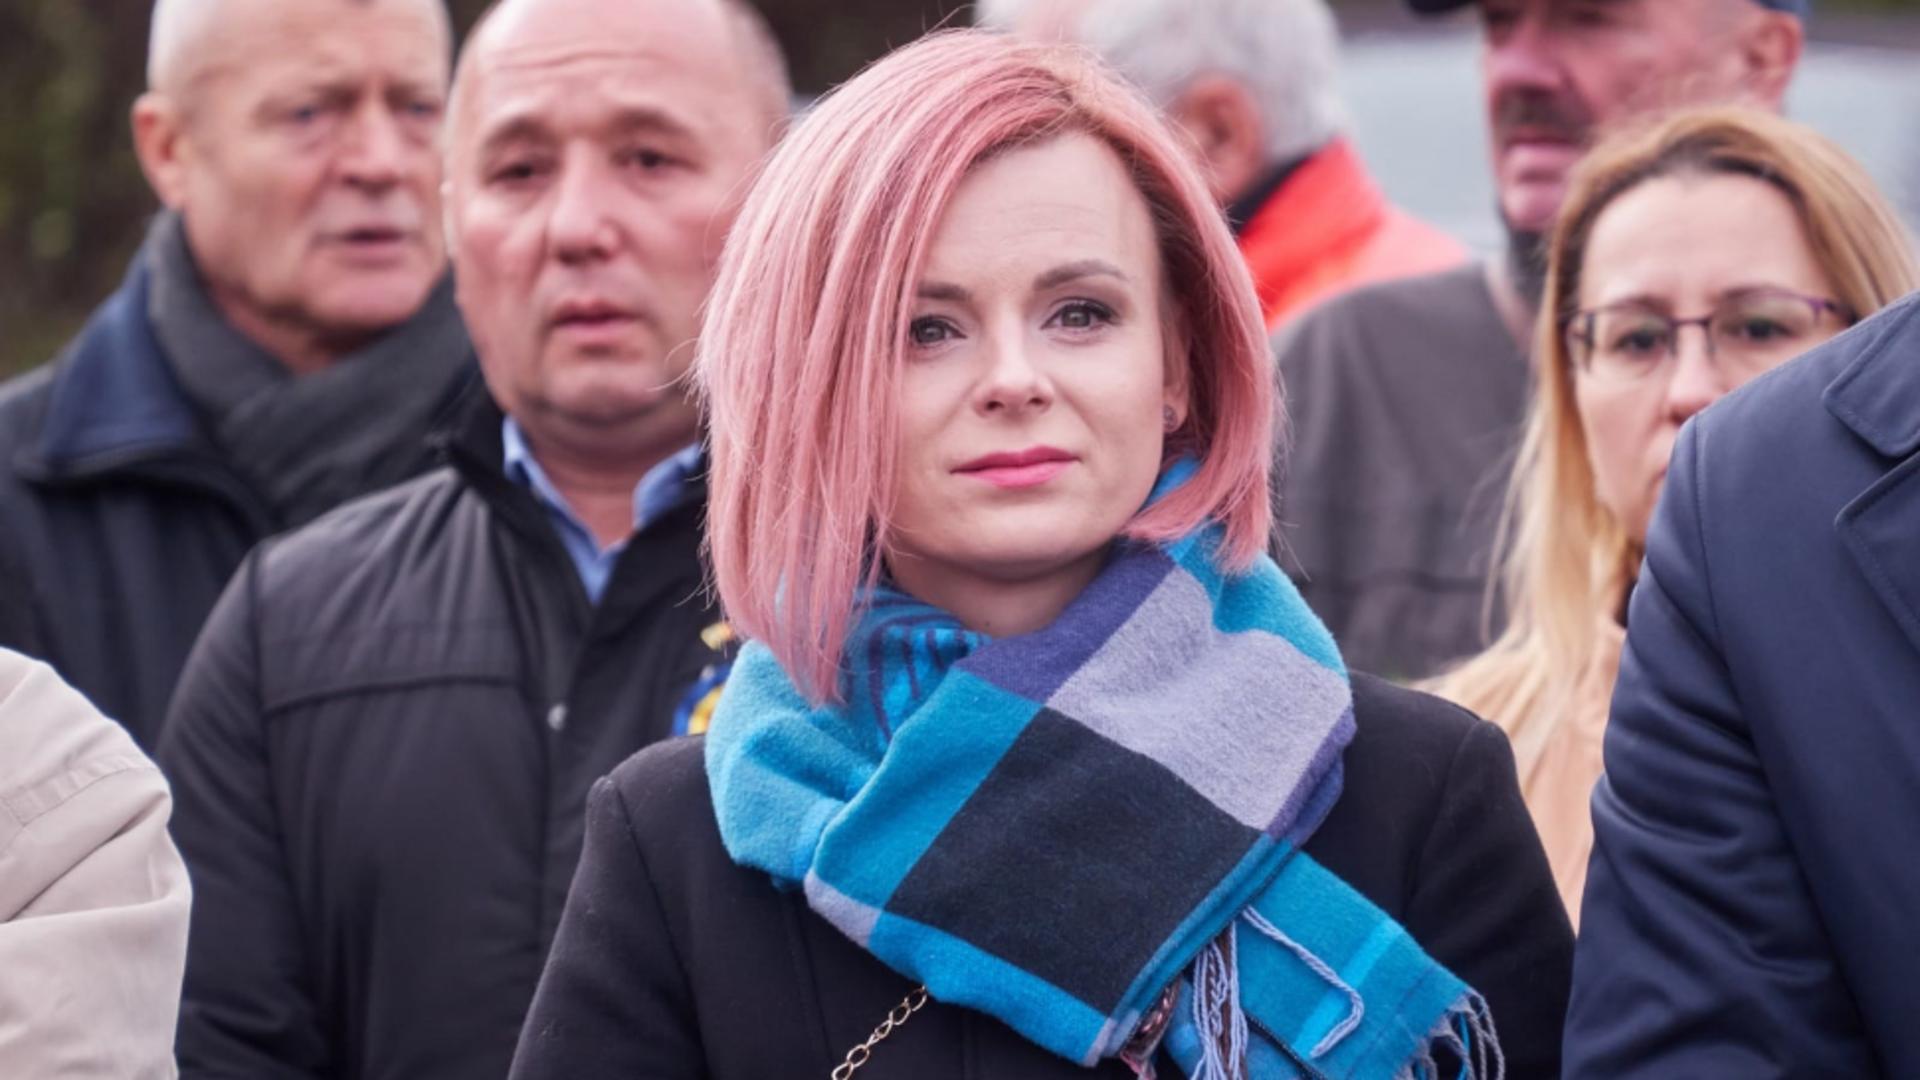 Percheziții DNA la Primăria Brașov. Viceprimarul Flavia Boghiu, urmărită penal pentru abuz în serviciu